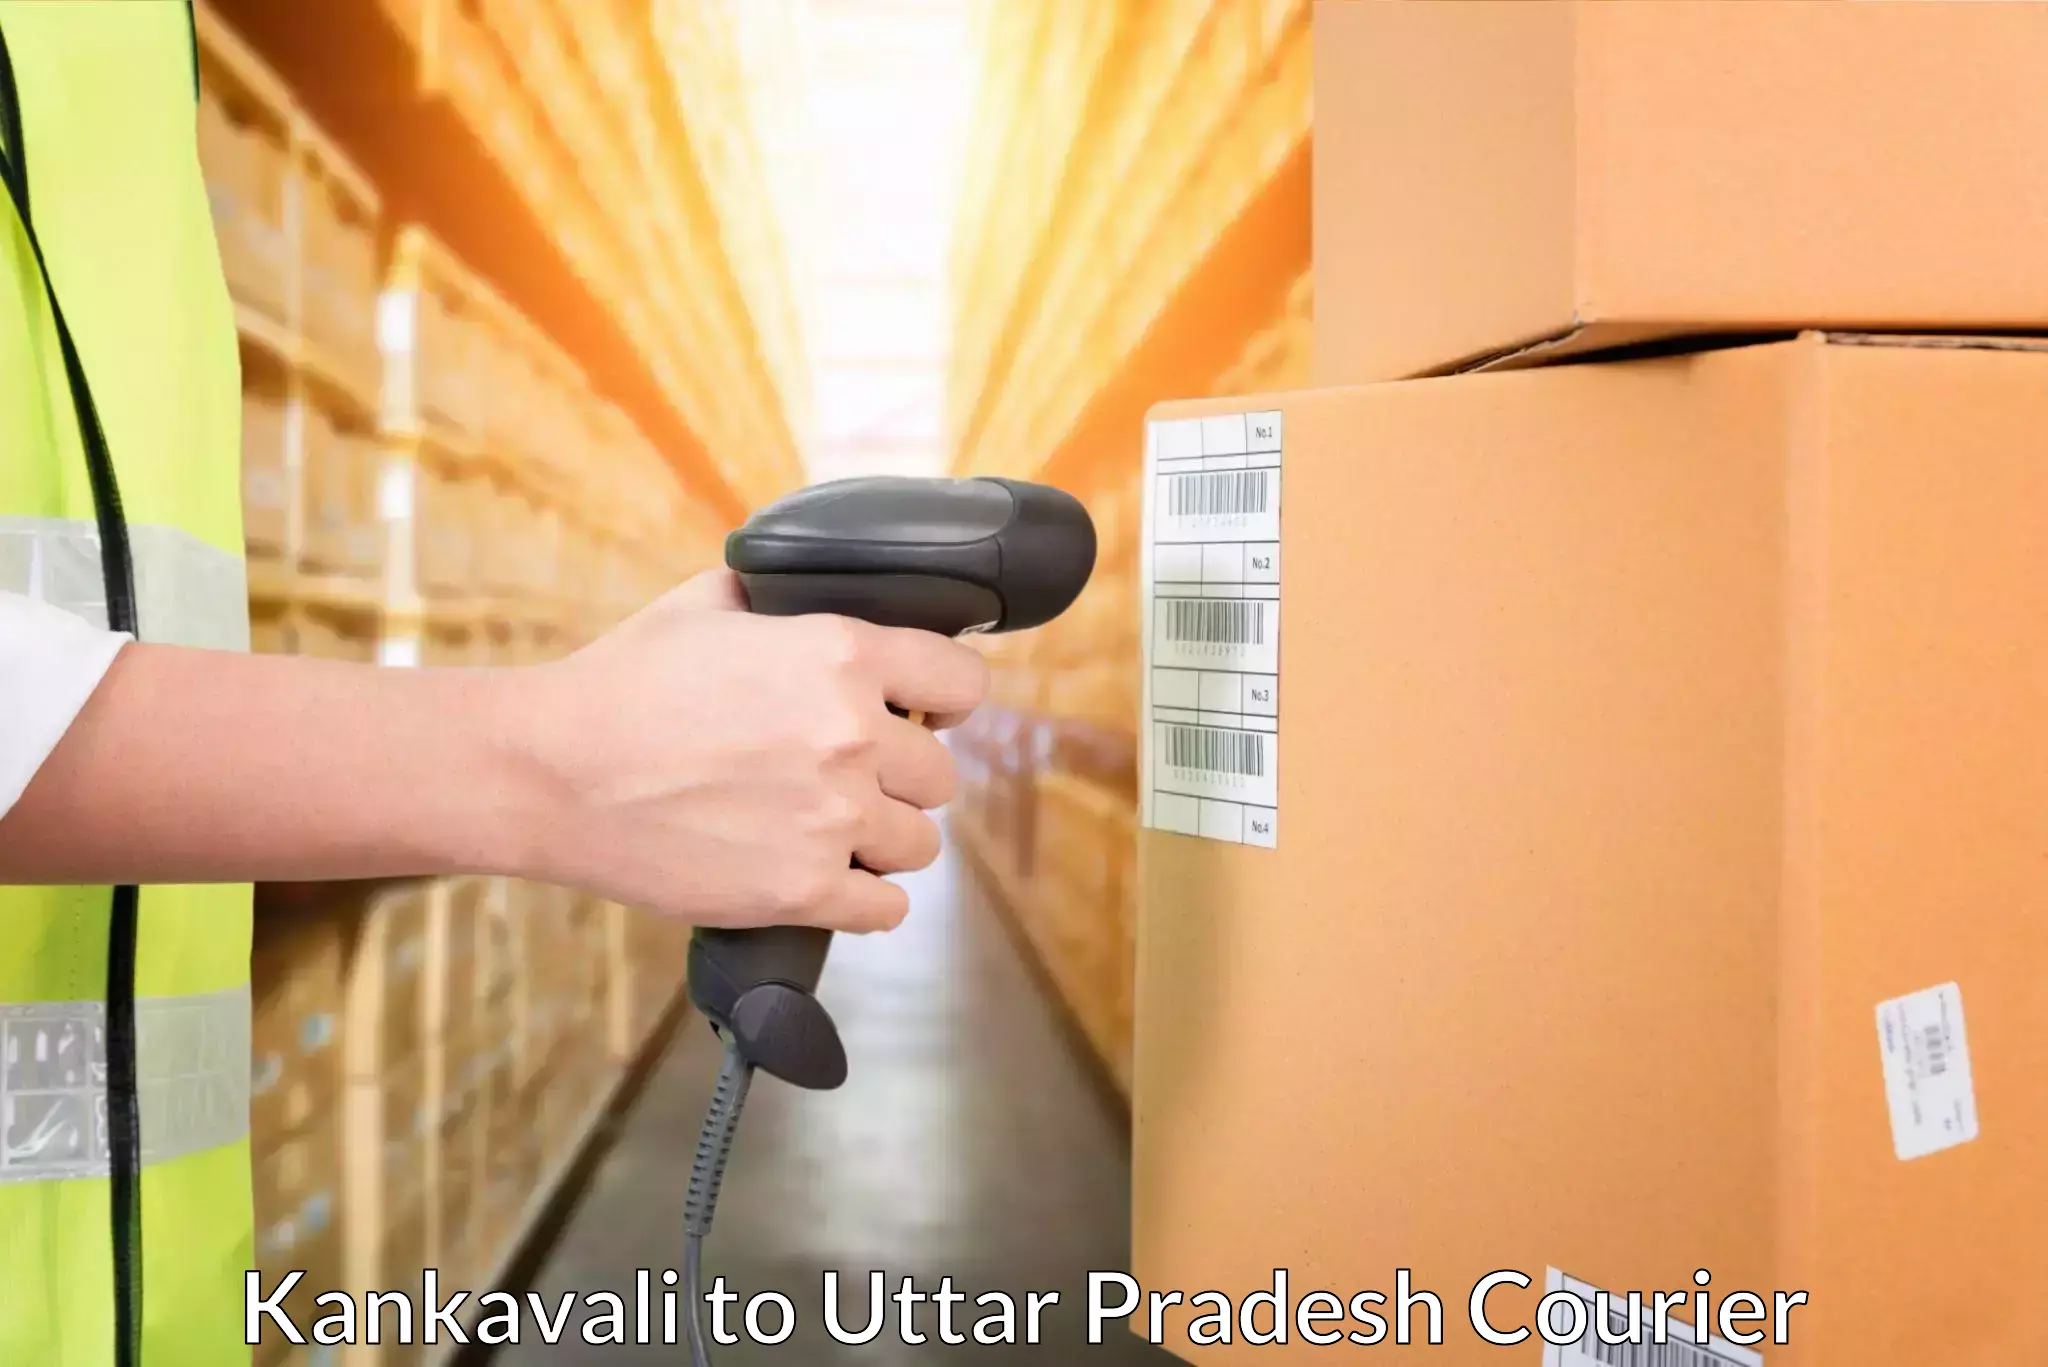 E-commerce fulfillment Kankavali to Uttar Pradesh